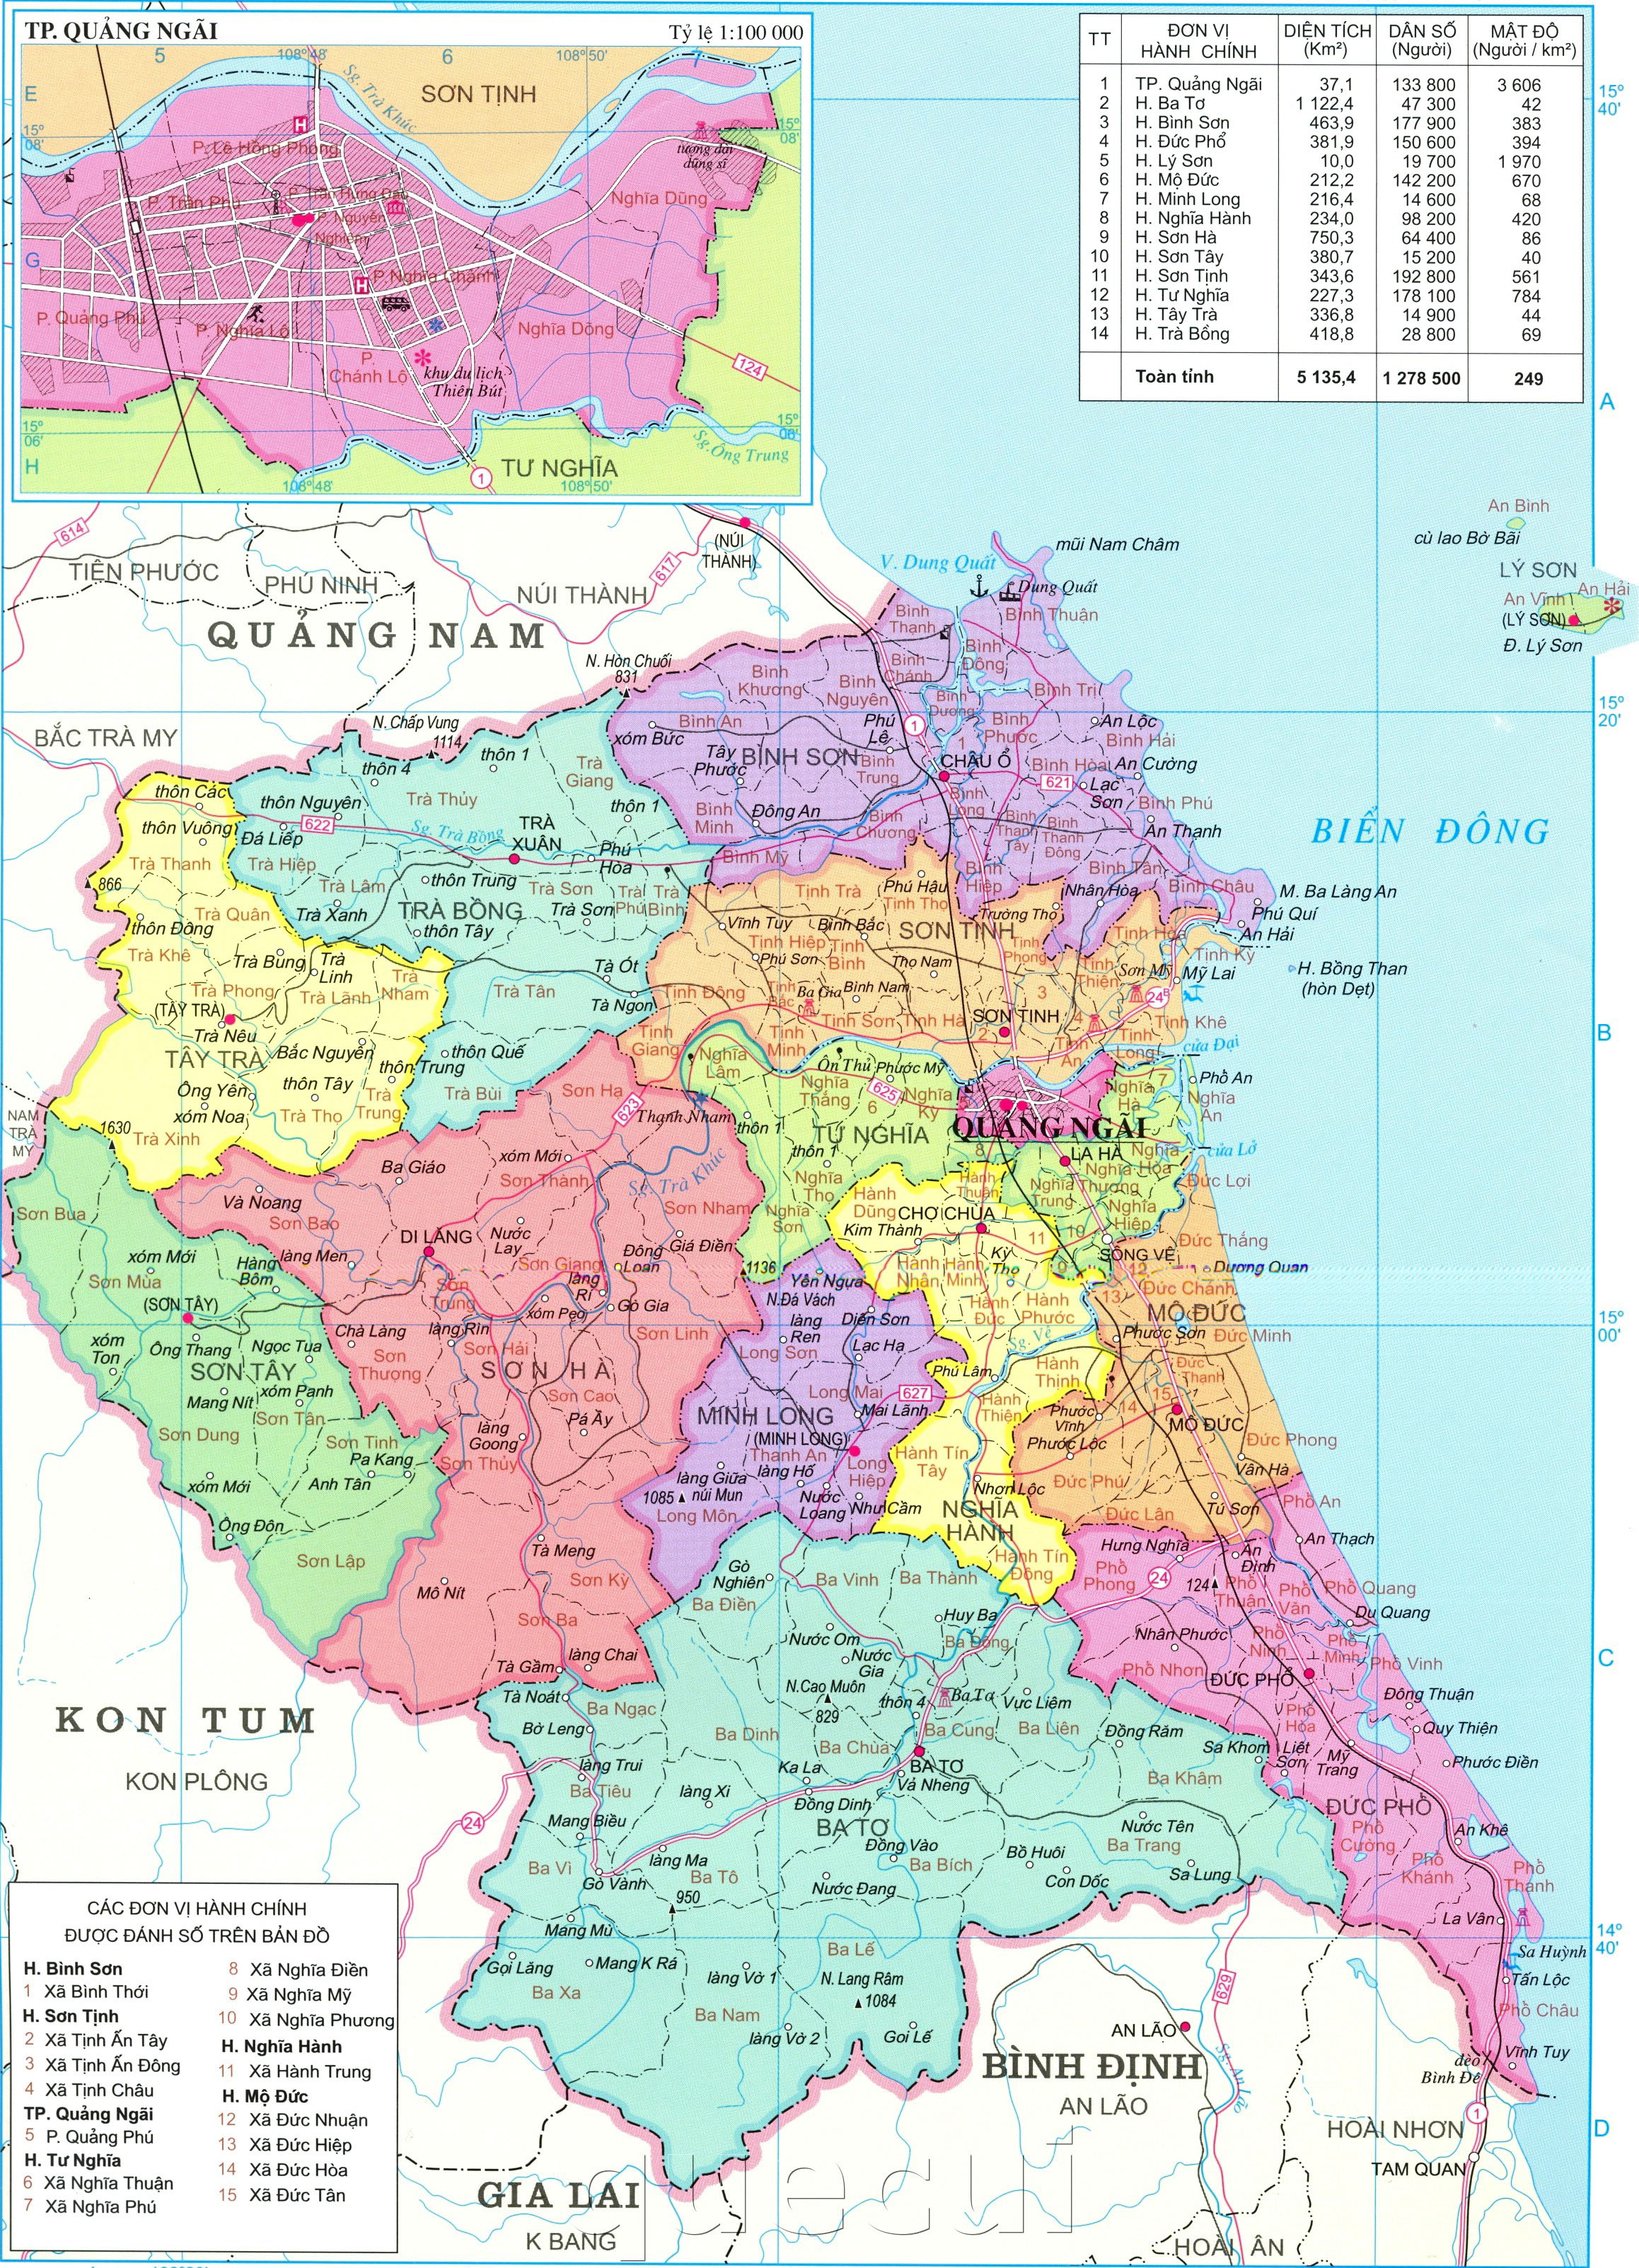 Cập nhật bản đồ hành chính tỉnh Quảng Ngãi mới nhất và chính xác nhất, giúp bạn dễ dàng tìm thấy địa điểm mong muốn trong khu vực này.